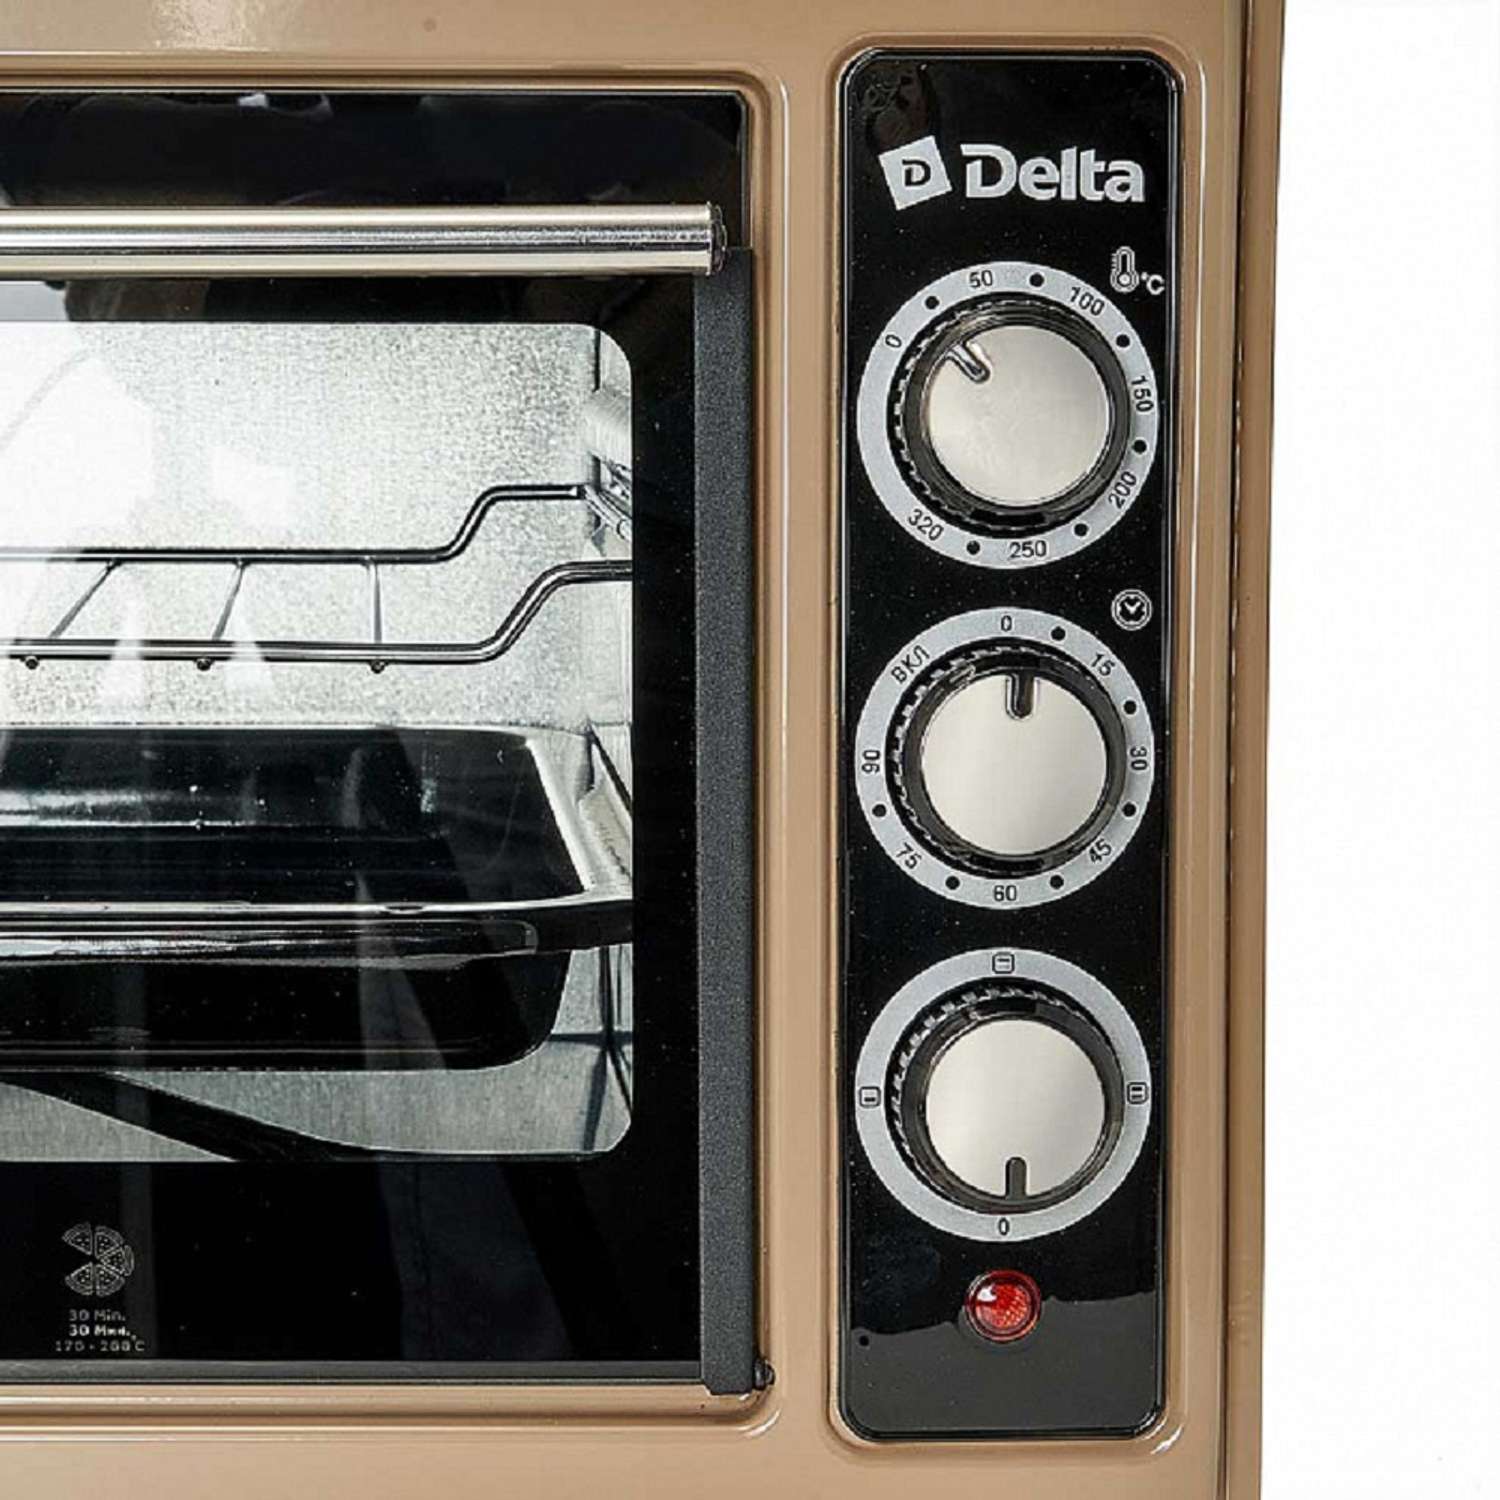 Мини-печь Delta D-0123 бежевая 1300 Вт 37 л 2 нагревательных элемента 1 противень решетка таймер - фото 9